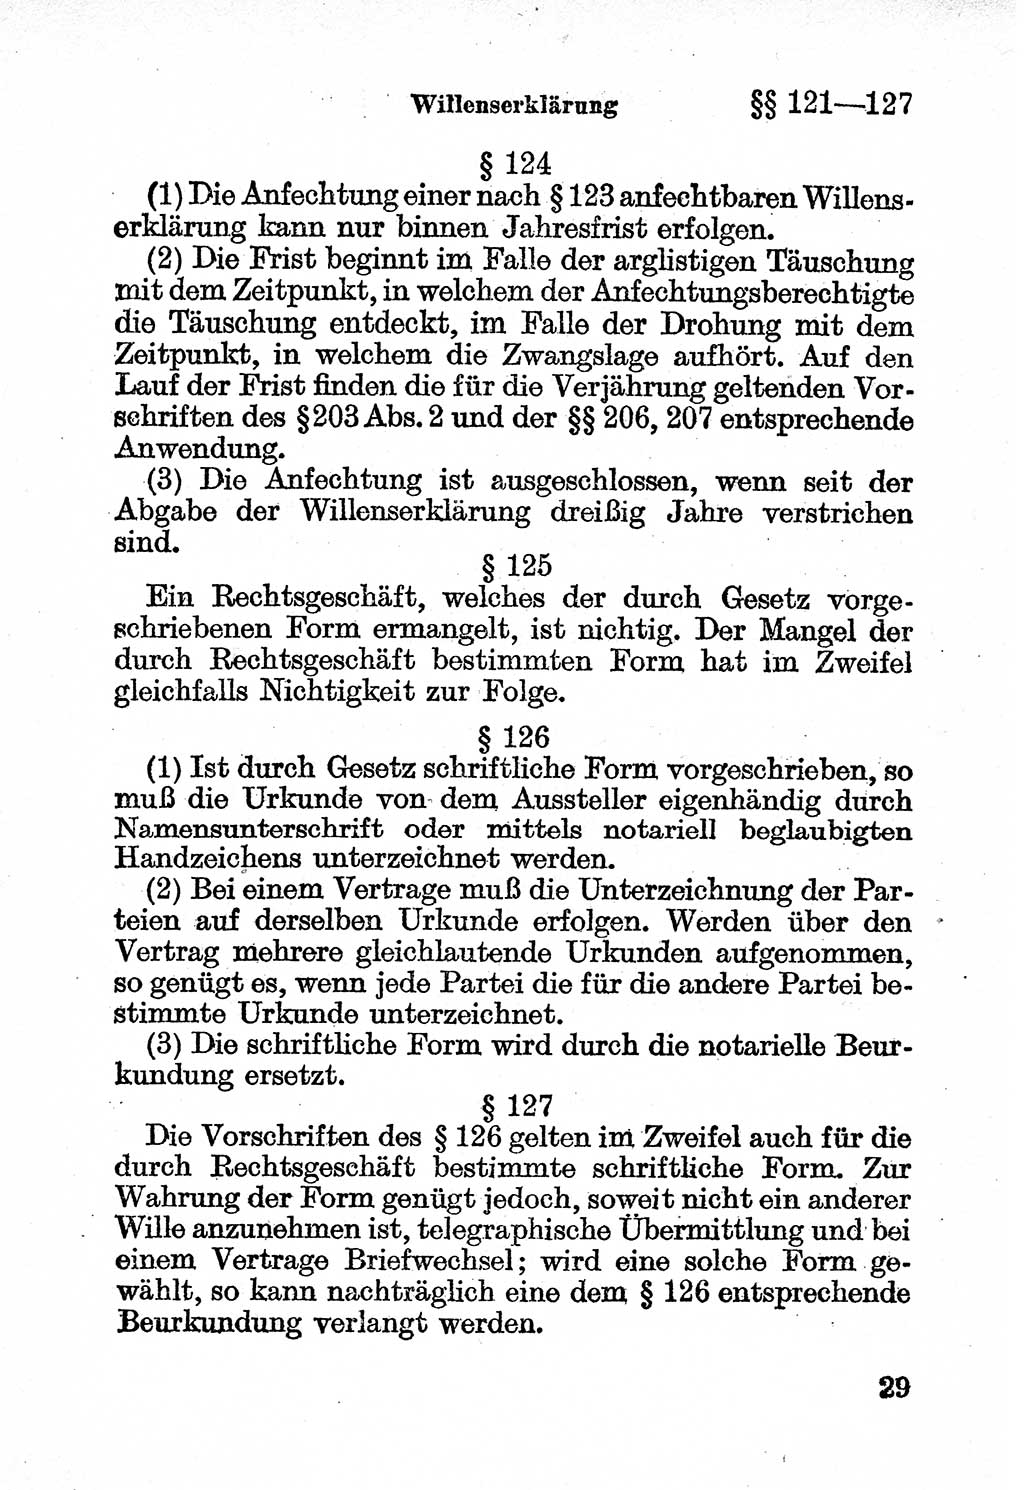 Bürgerliches Gesetzbuch (BGB) nebst wichtigen Nebengesetzen [Deutsche Demokratische Republik (DDR)] 1956, Seite 29 (BGB Nebenges. DDR 1956, S. 29)